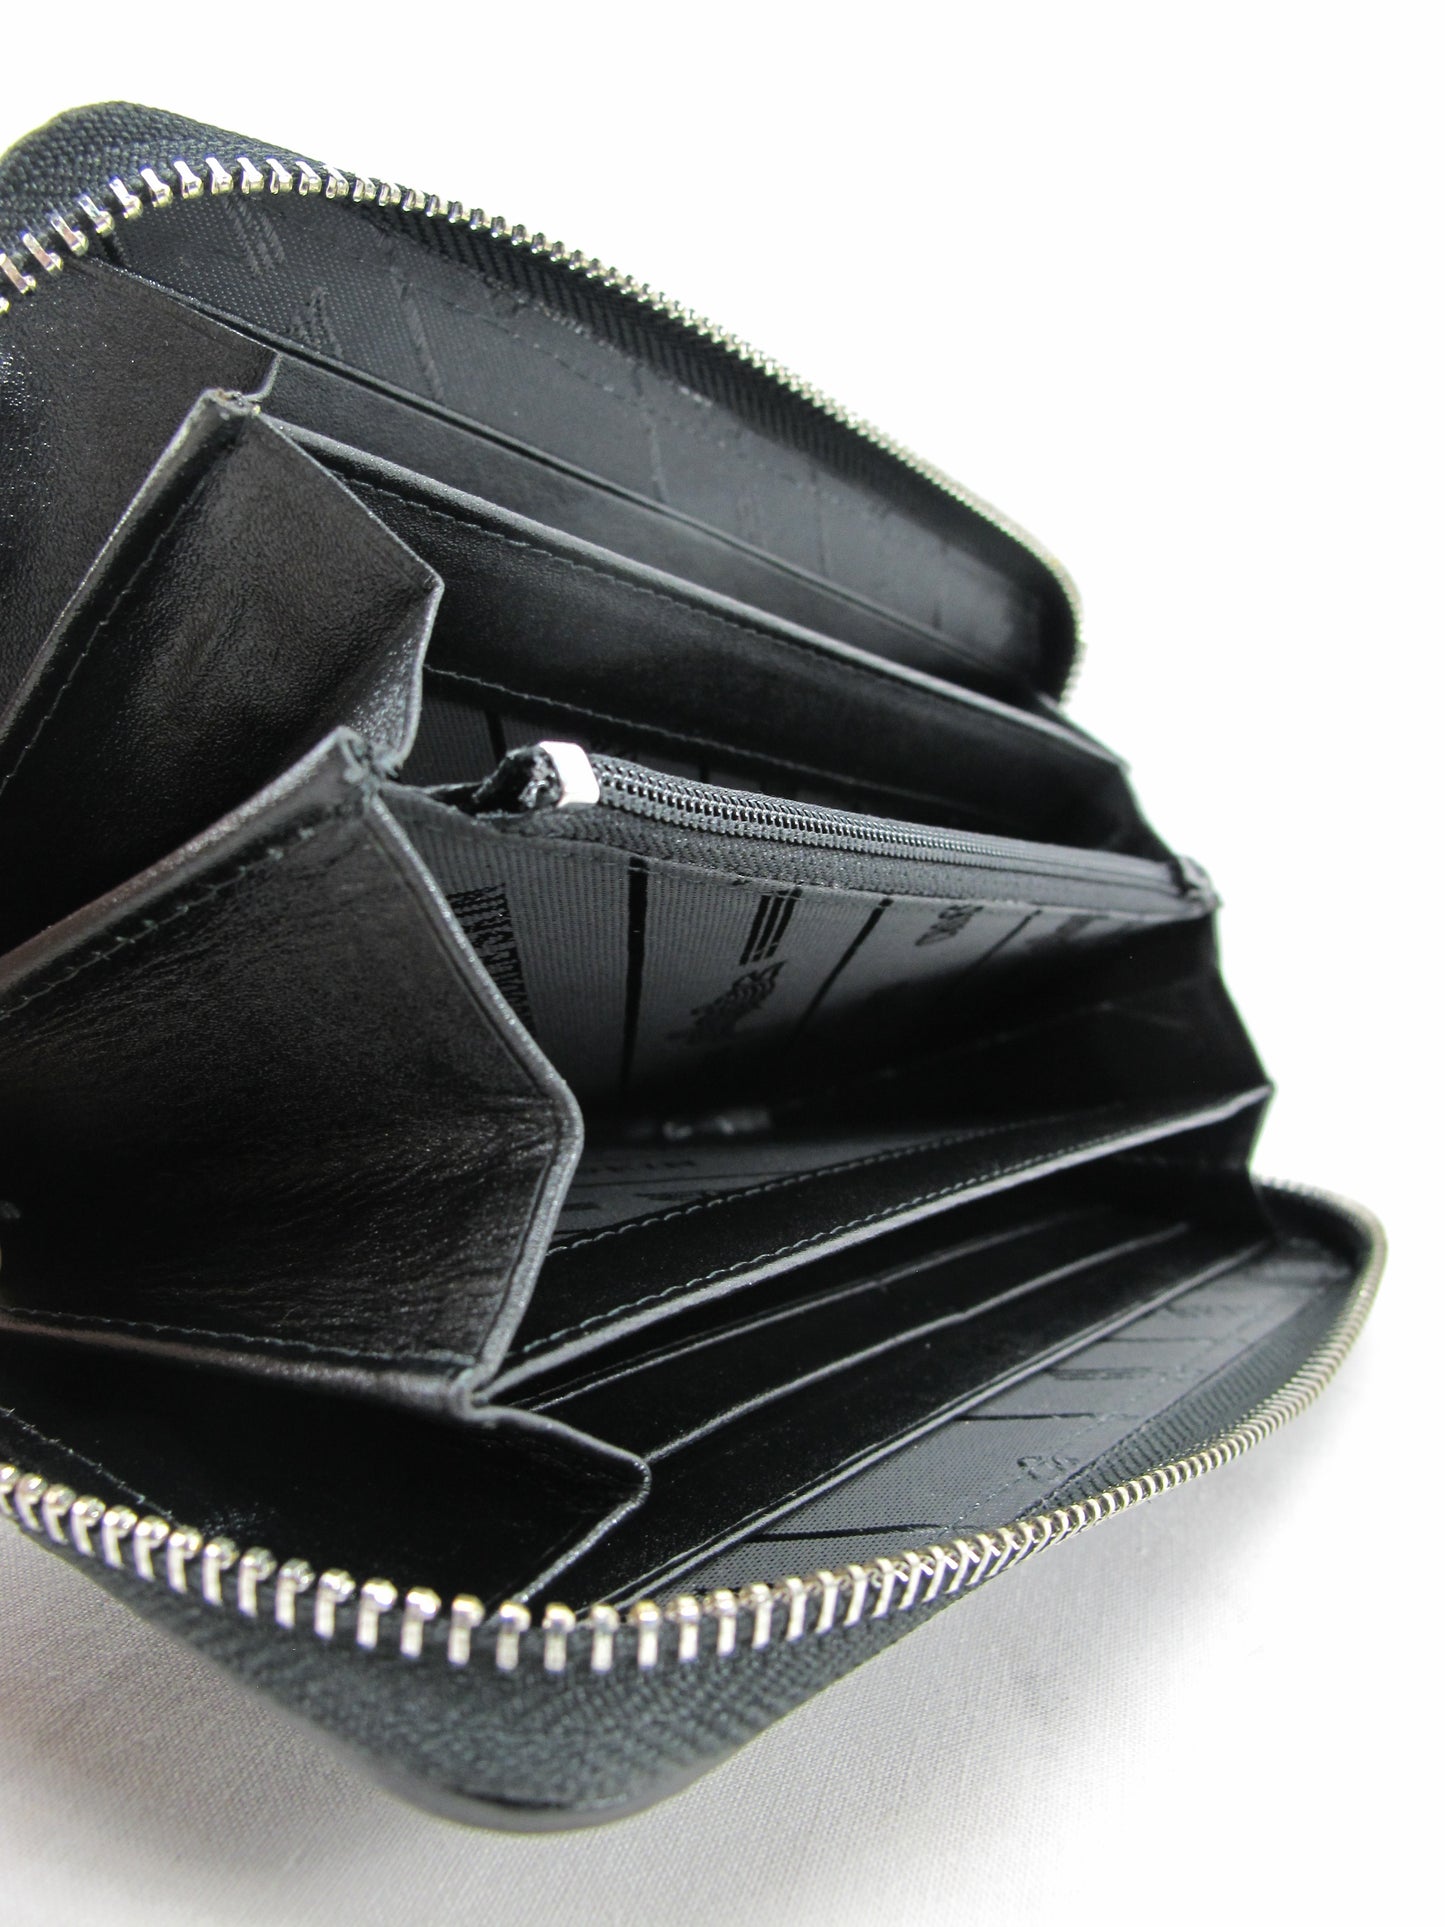 Genuine Python Belly Skin Leather Zip Around Clutch Wallet Purse